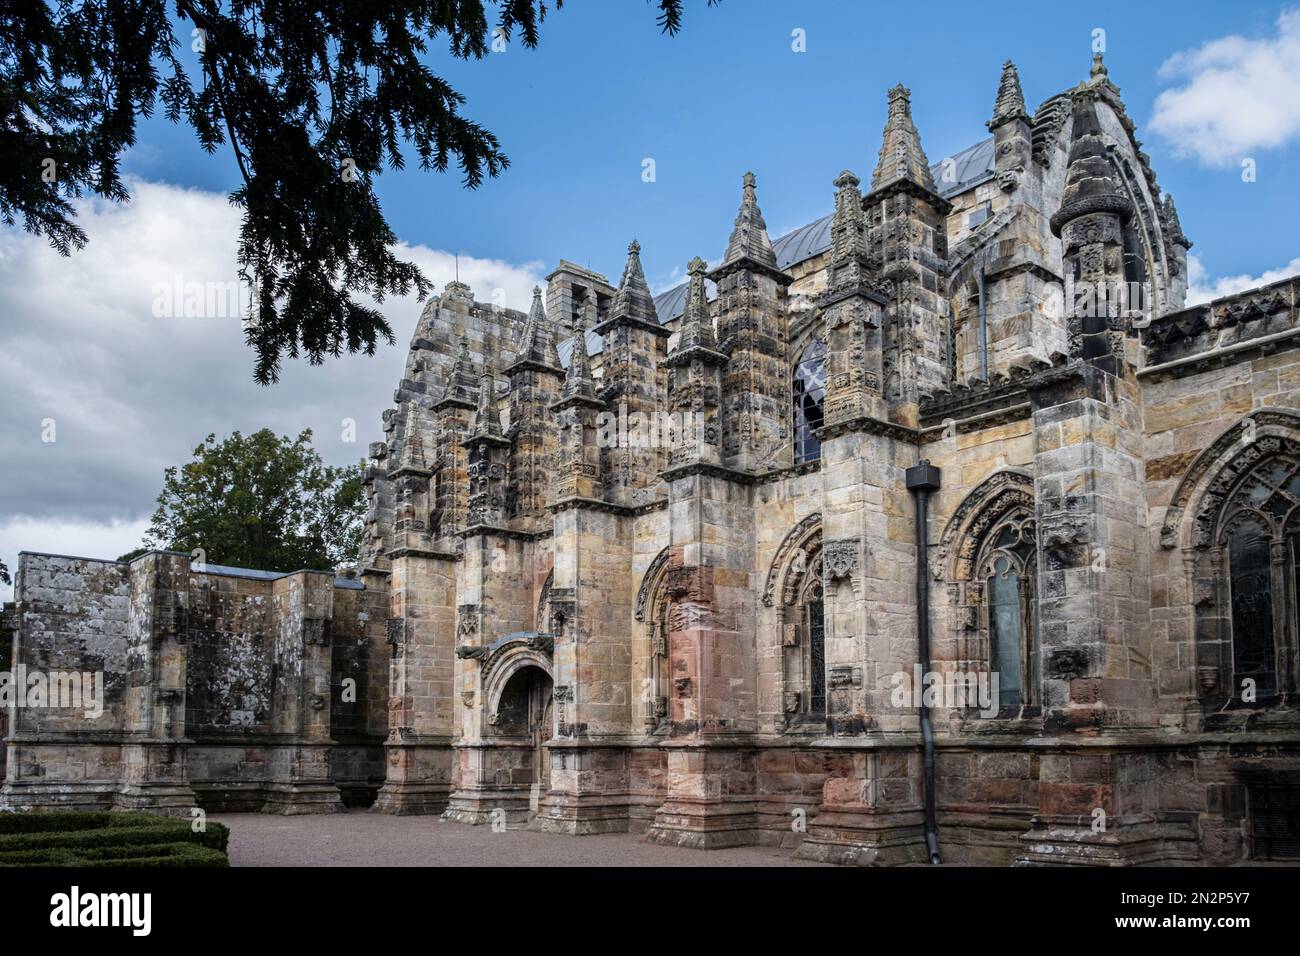 Schottland, Roslin, Midlothian, Rosslyn Chapel. Außenansicht der gotischen Kapelle mit fliegenden Stollen. Keine Menschen. Stockfoto